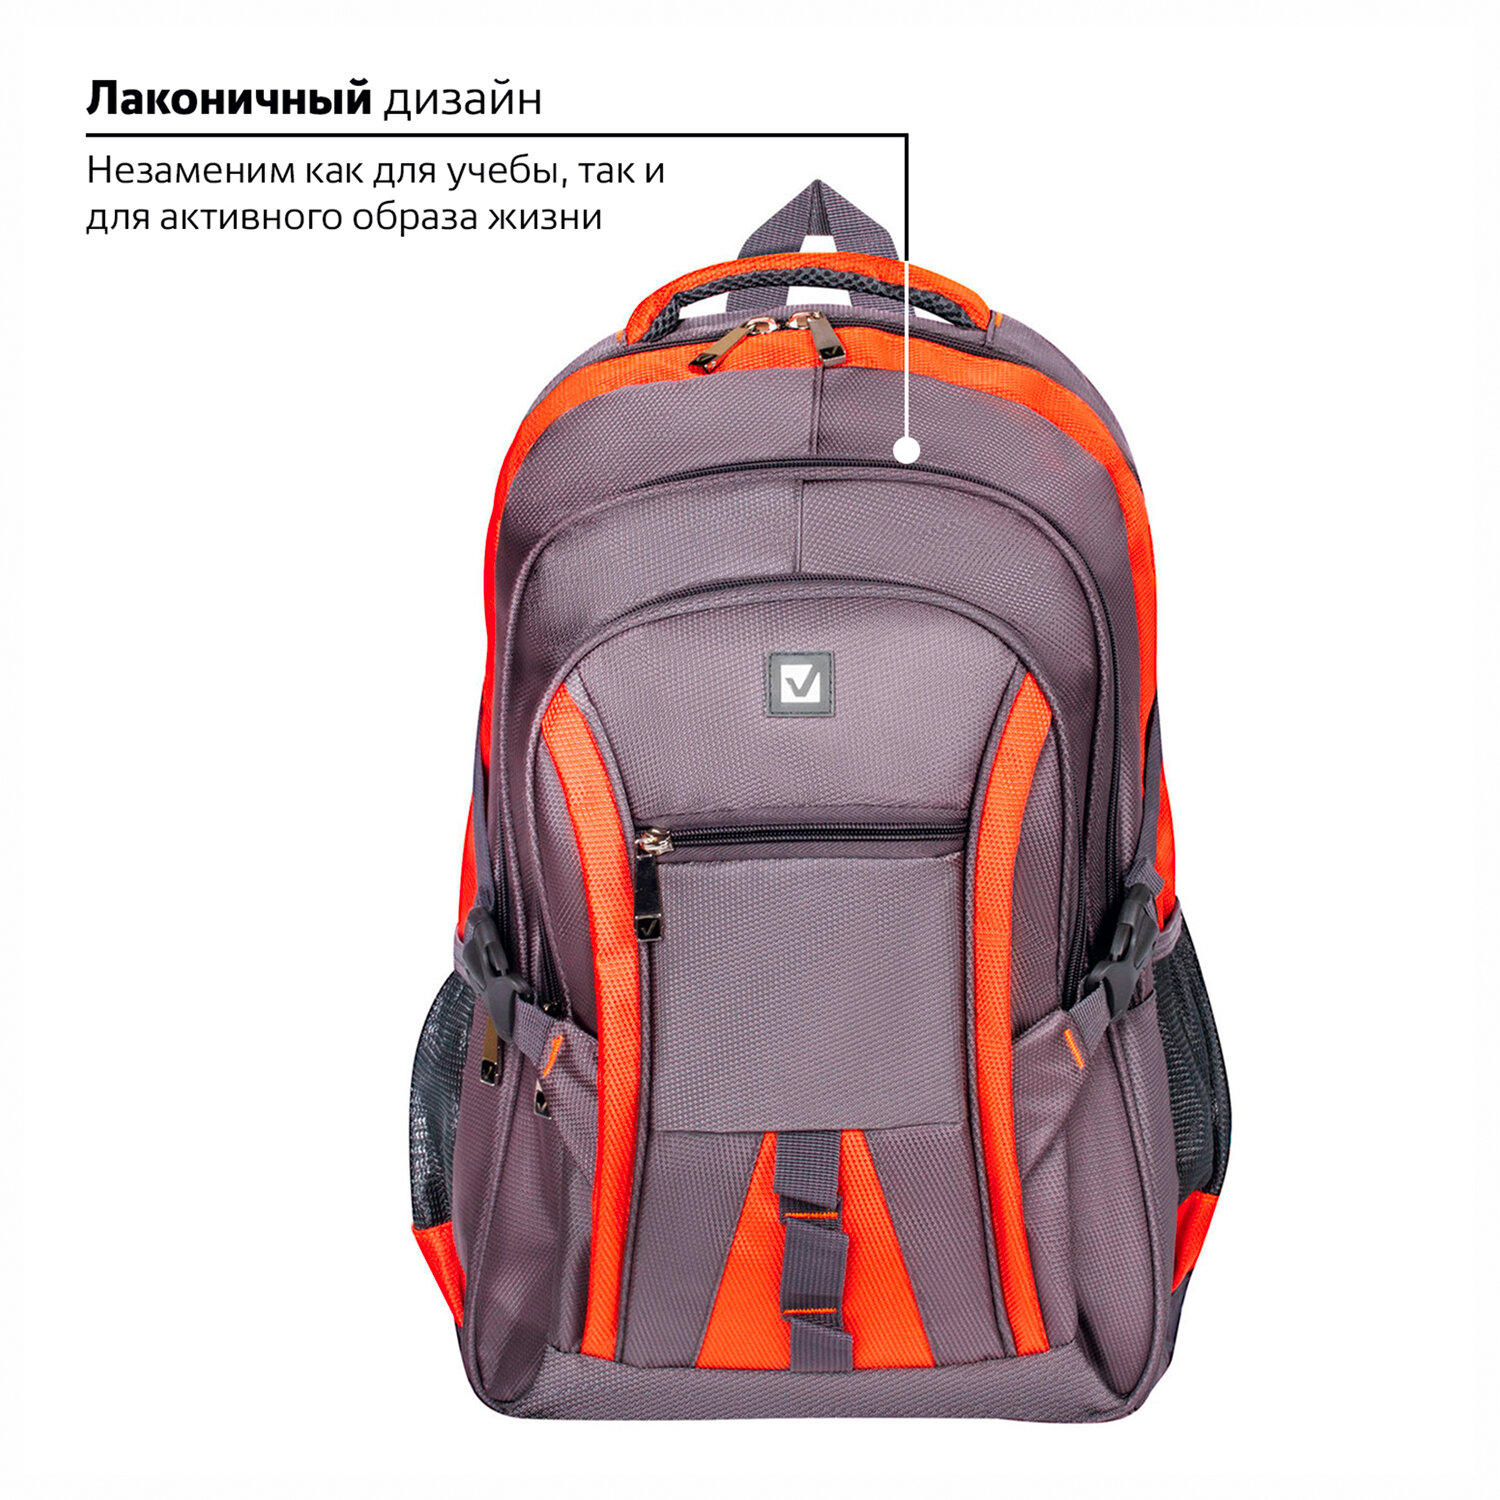 Рюкзак Brauberg SpeedWay 2 для школы и офиса ткань серо-оранжевый - фото 2